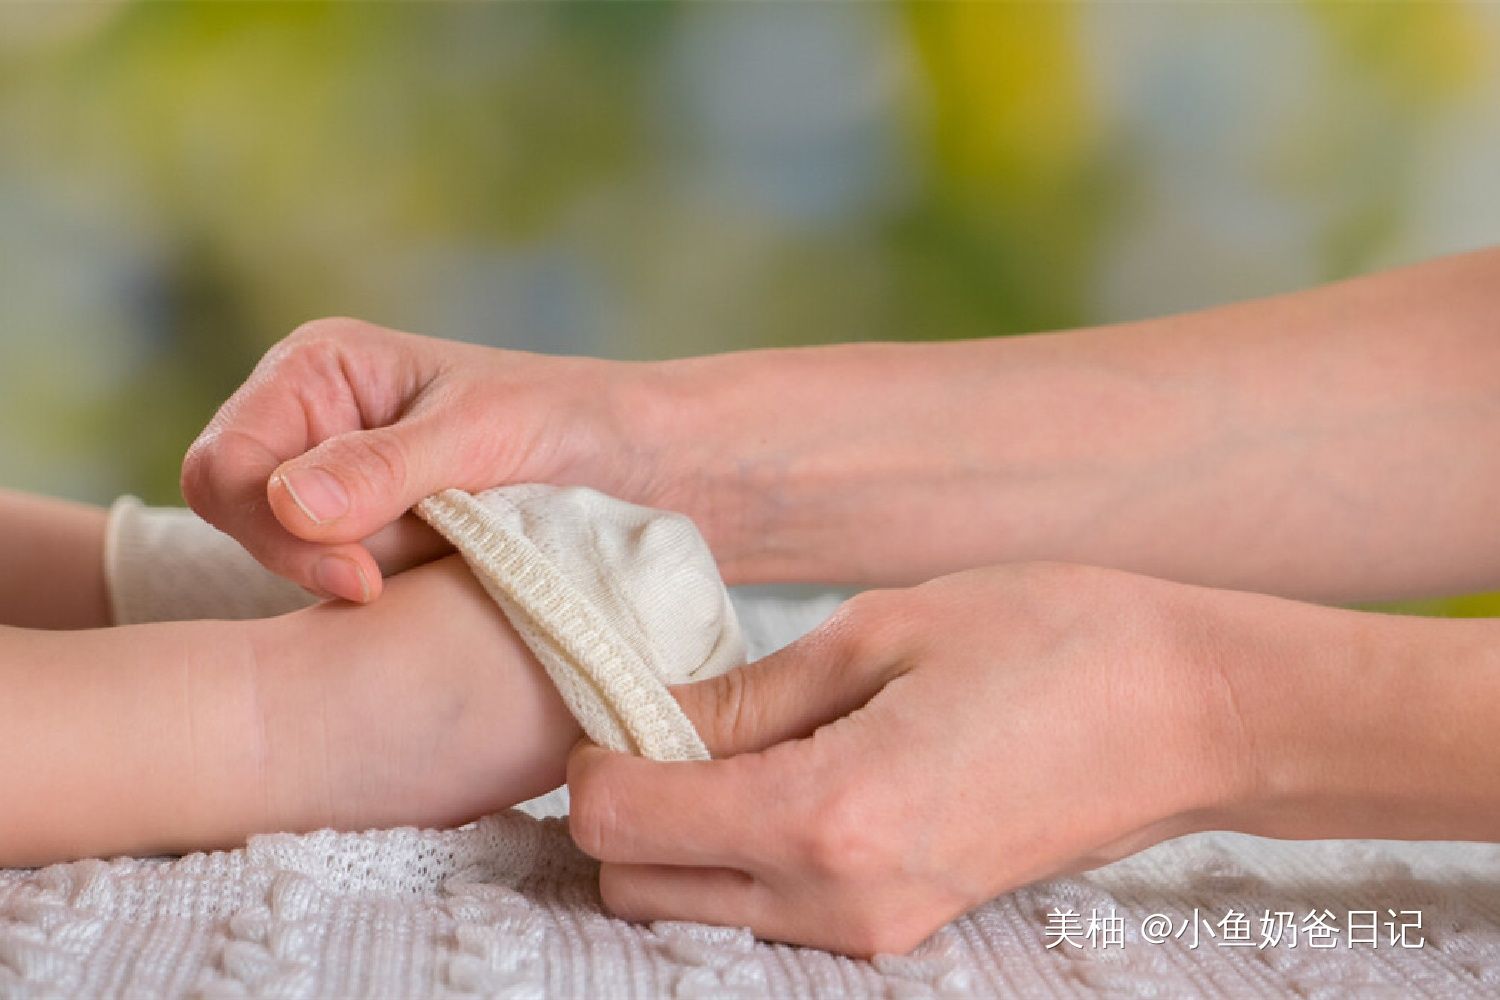 为何大多数宝宝都不爱穿袜子？宝宝的“脱袜癖好”，有心理需求